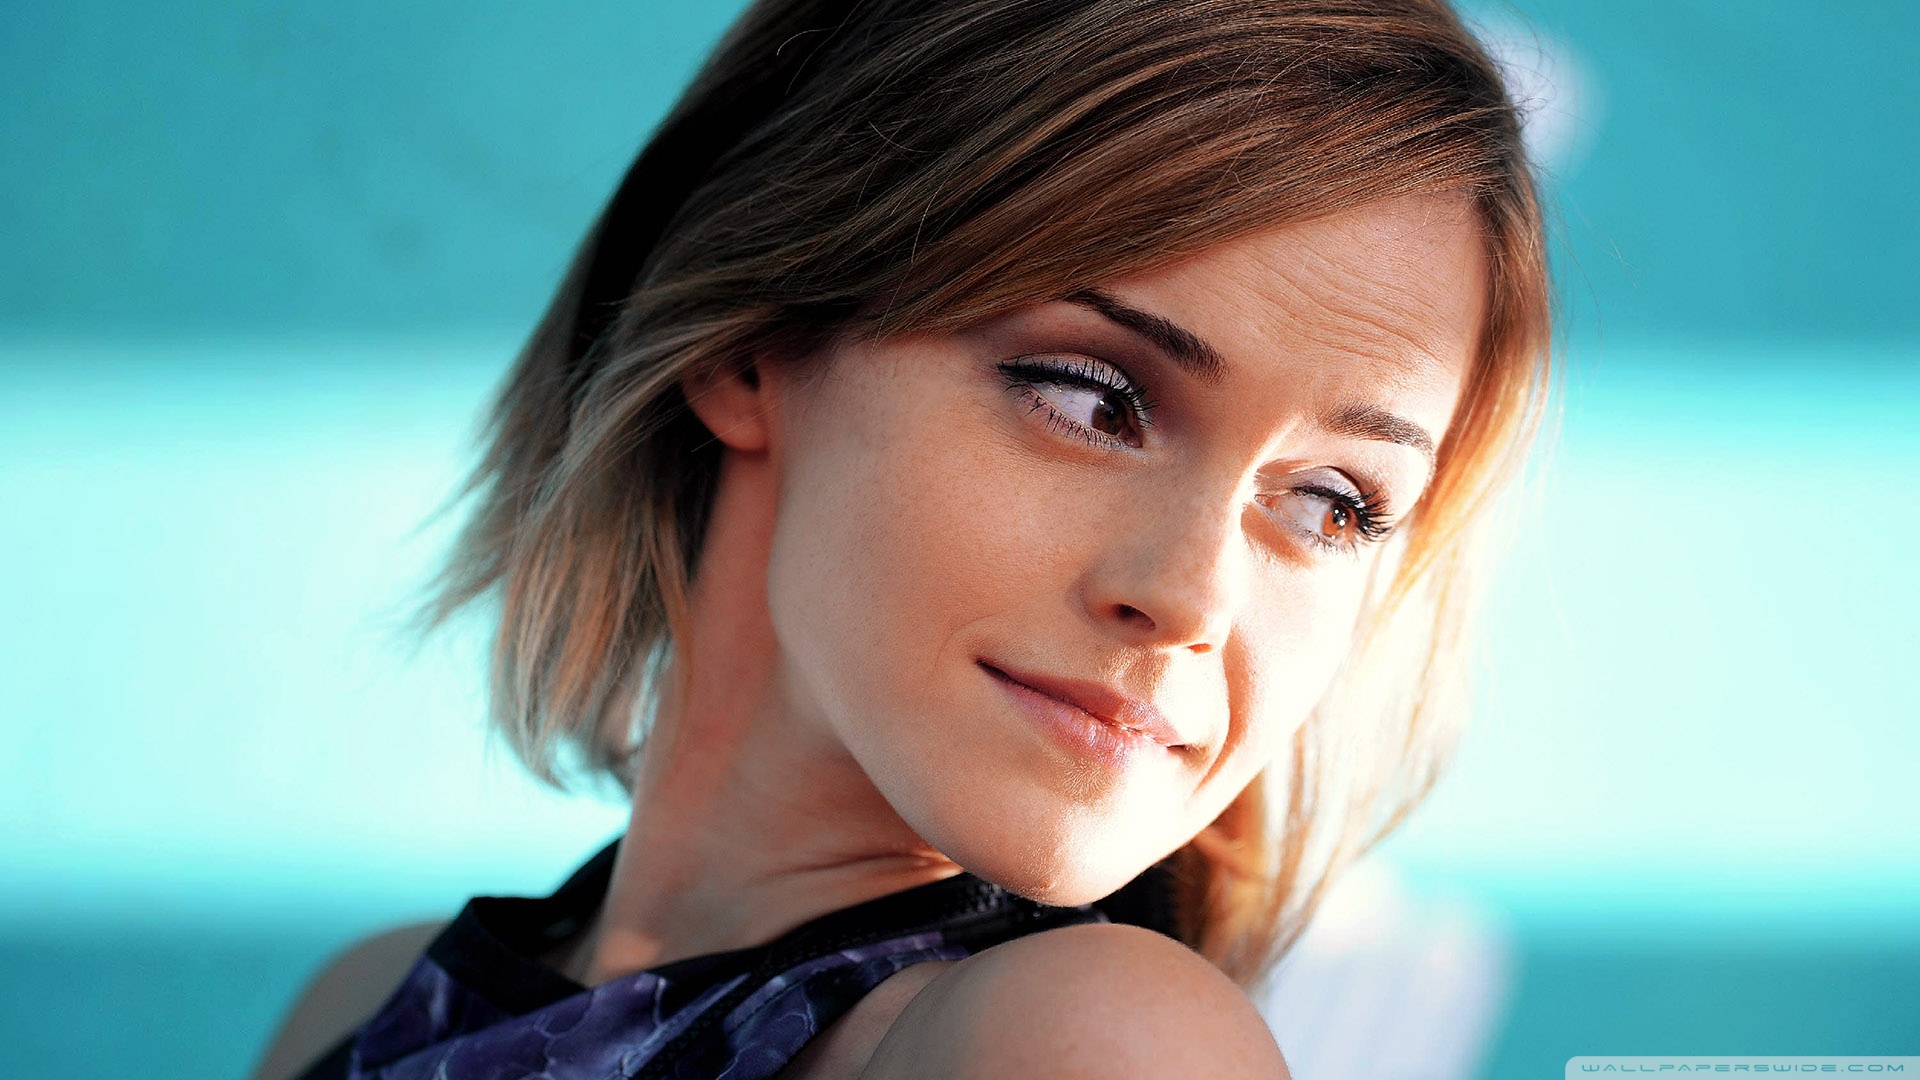 Emma Watson Hack Leaks Fappening